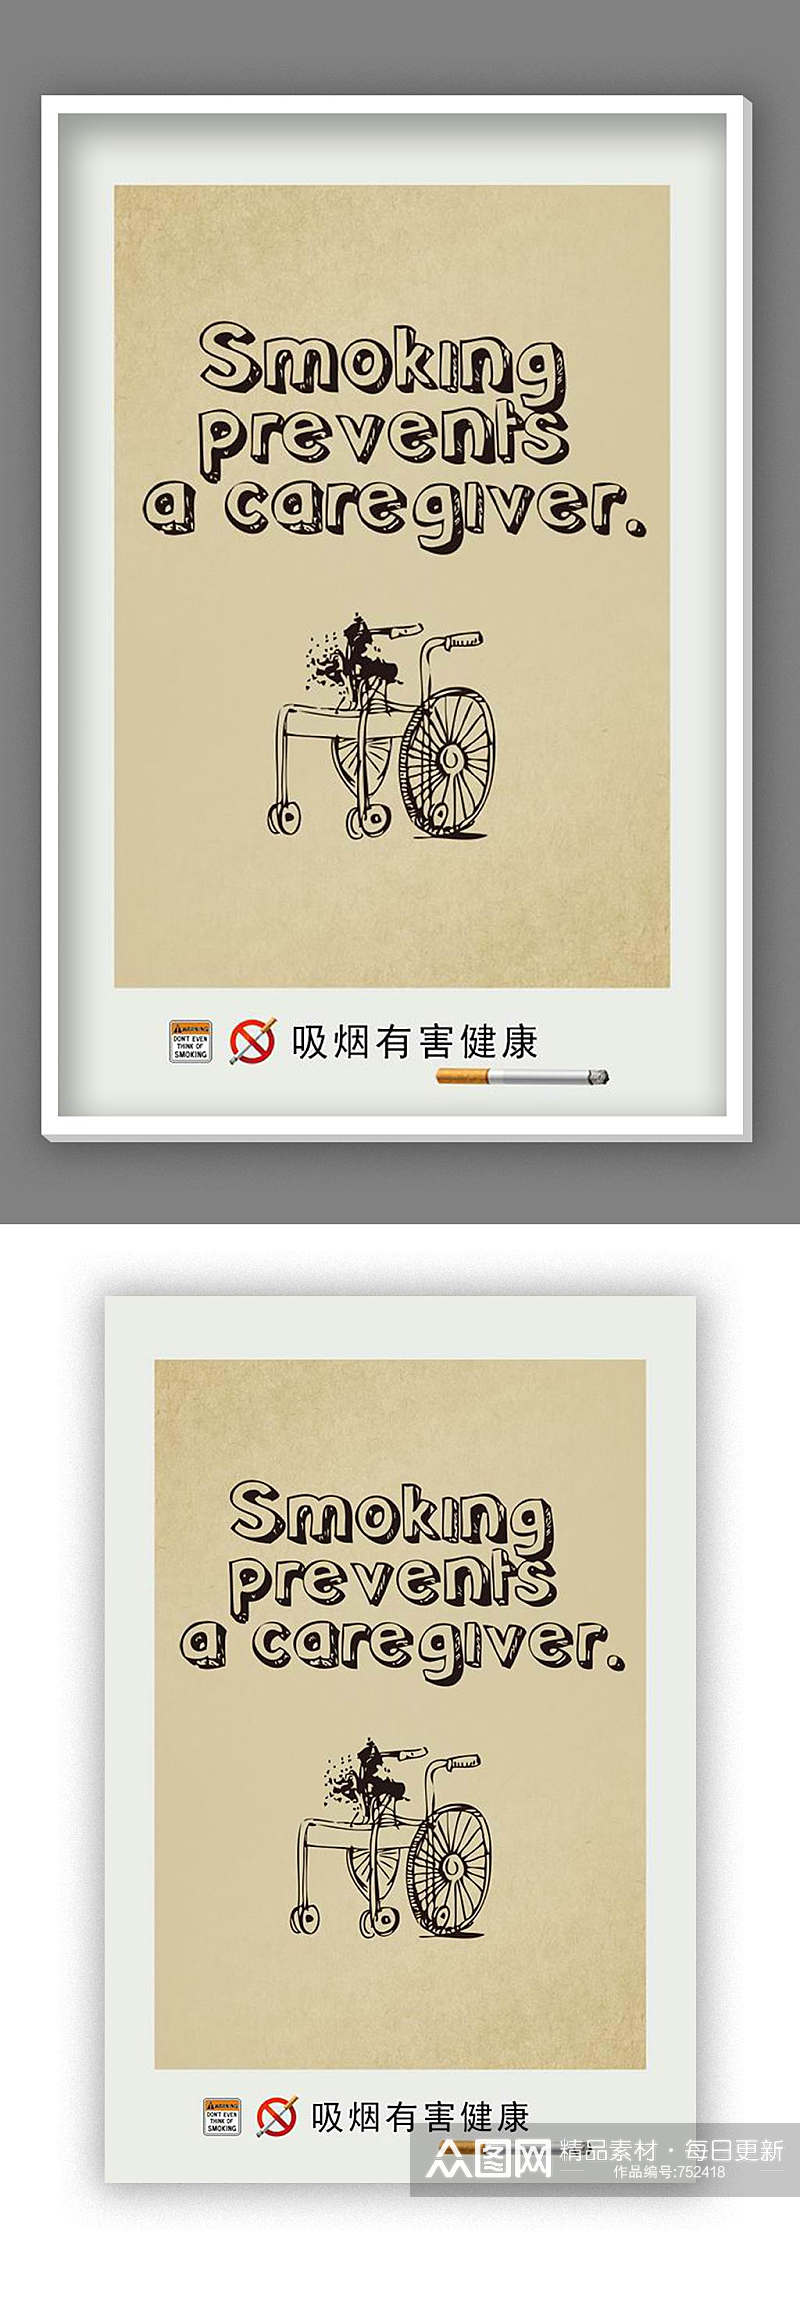 吸烟有害健康 海报设计素材